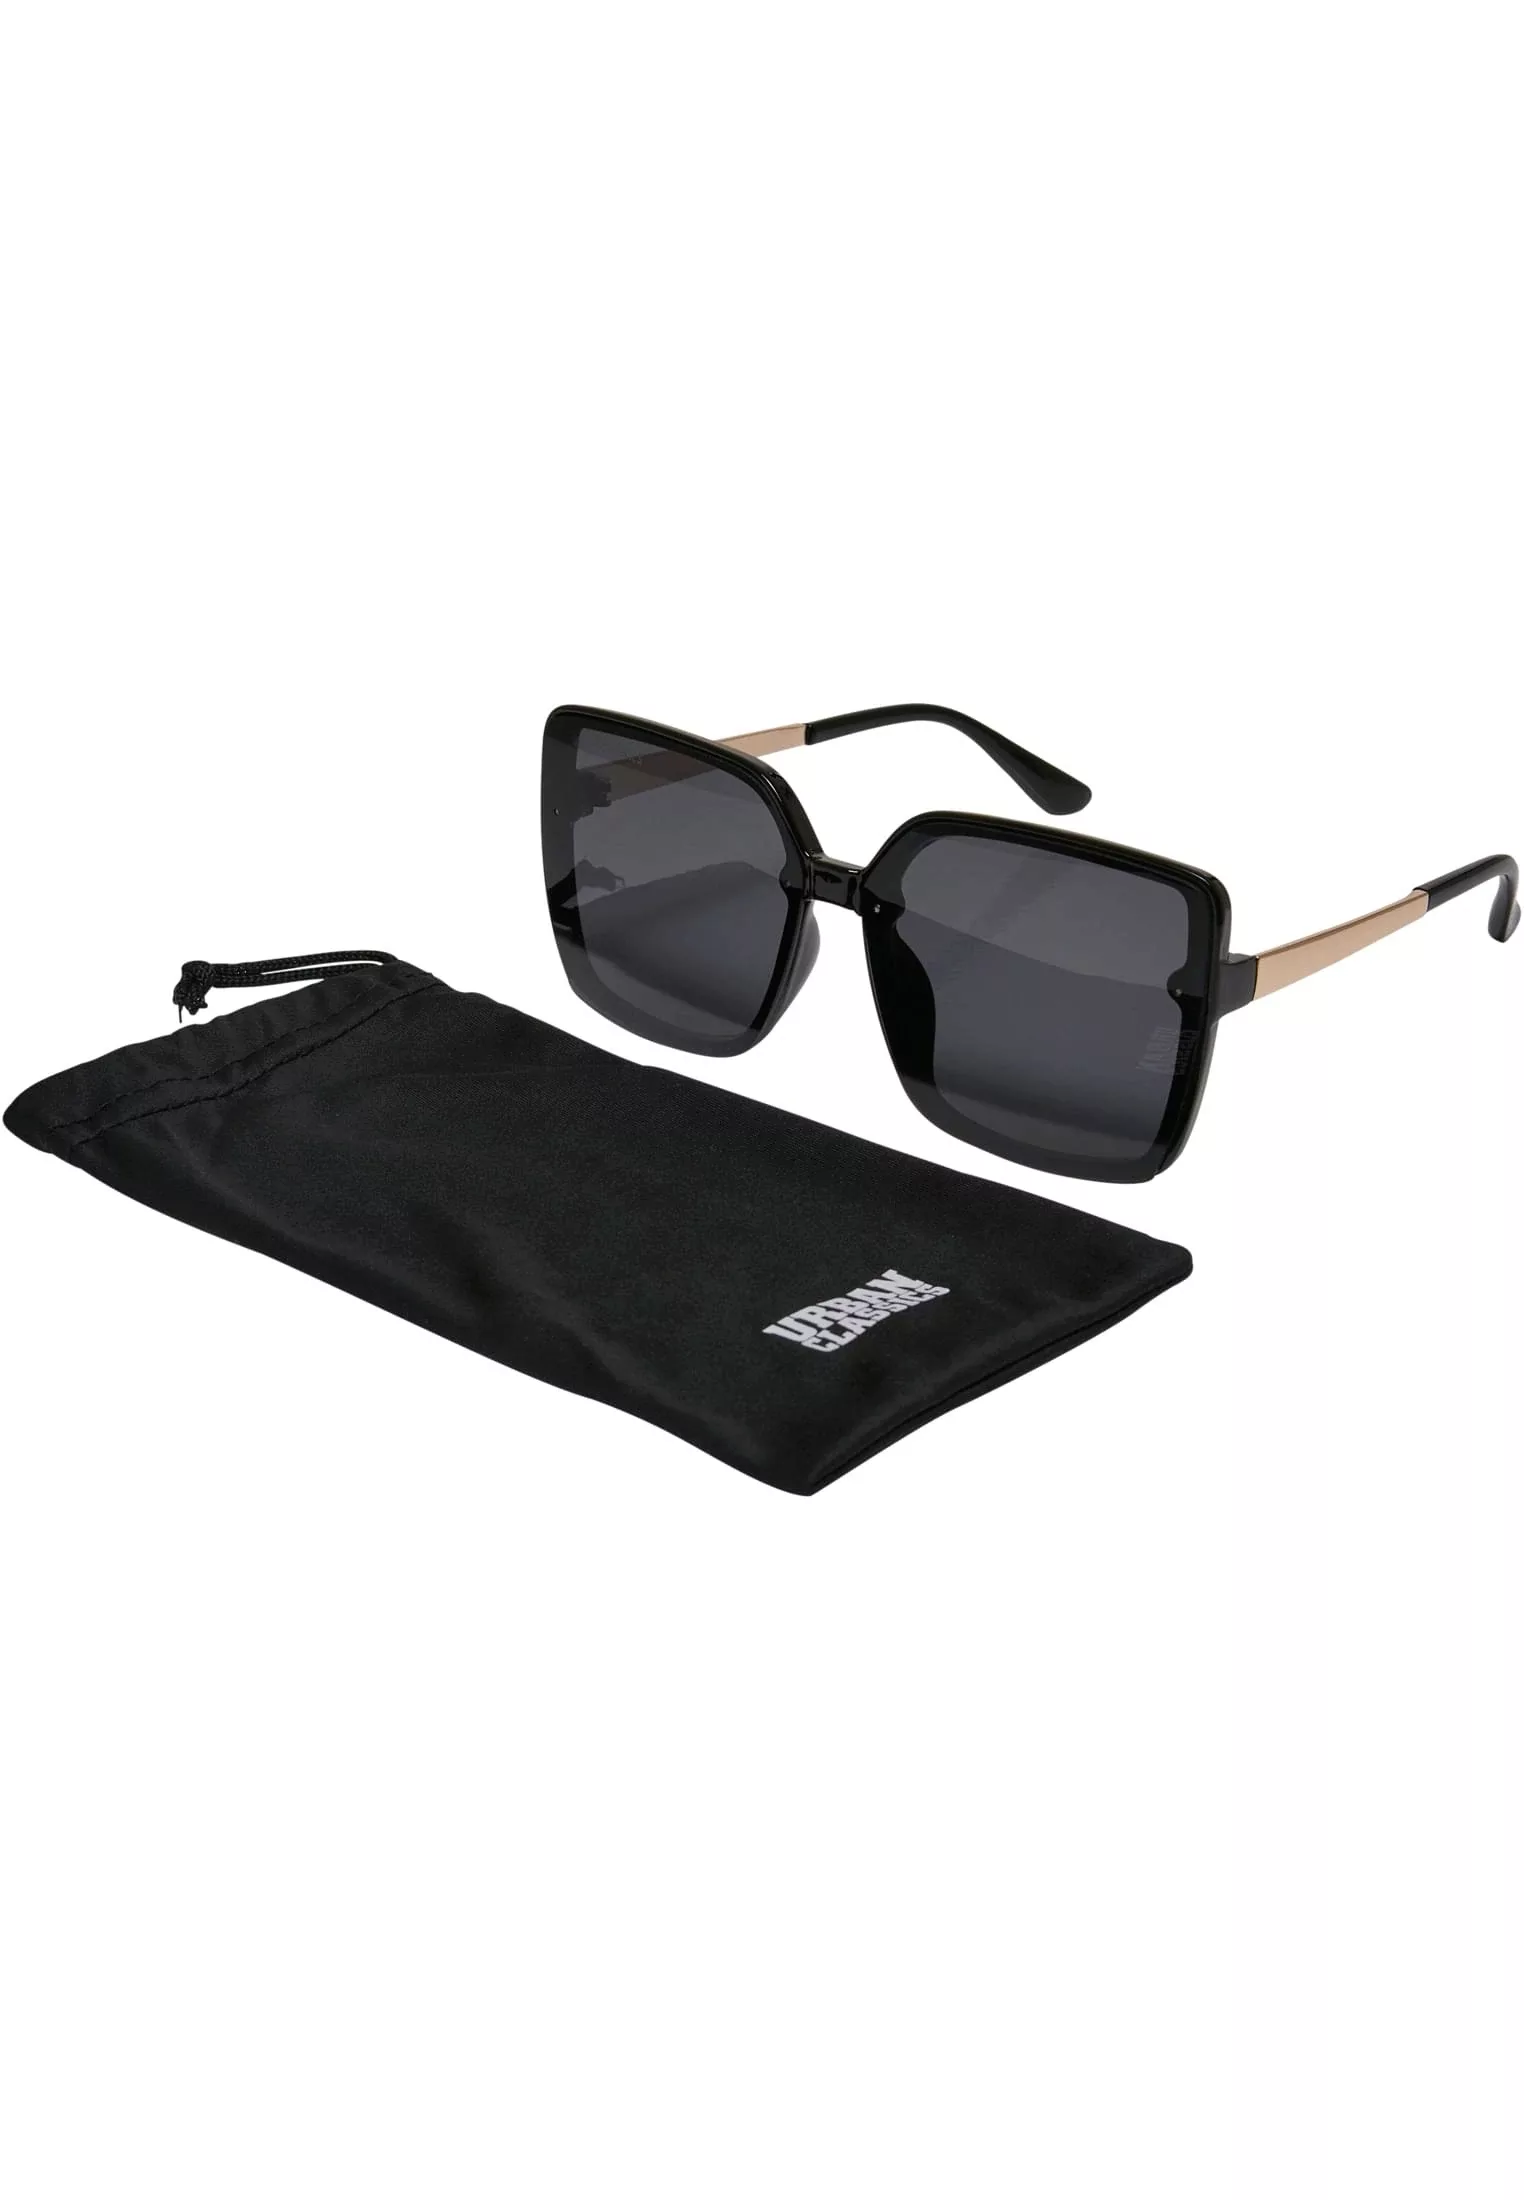 URBAN CLASSICS Sonnenbrille "Unisex Sunglasses Turin" günstig online kaufen